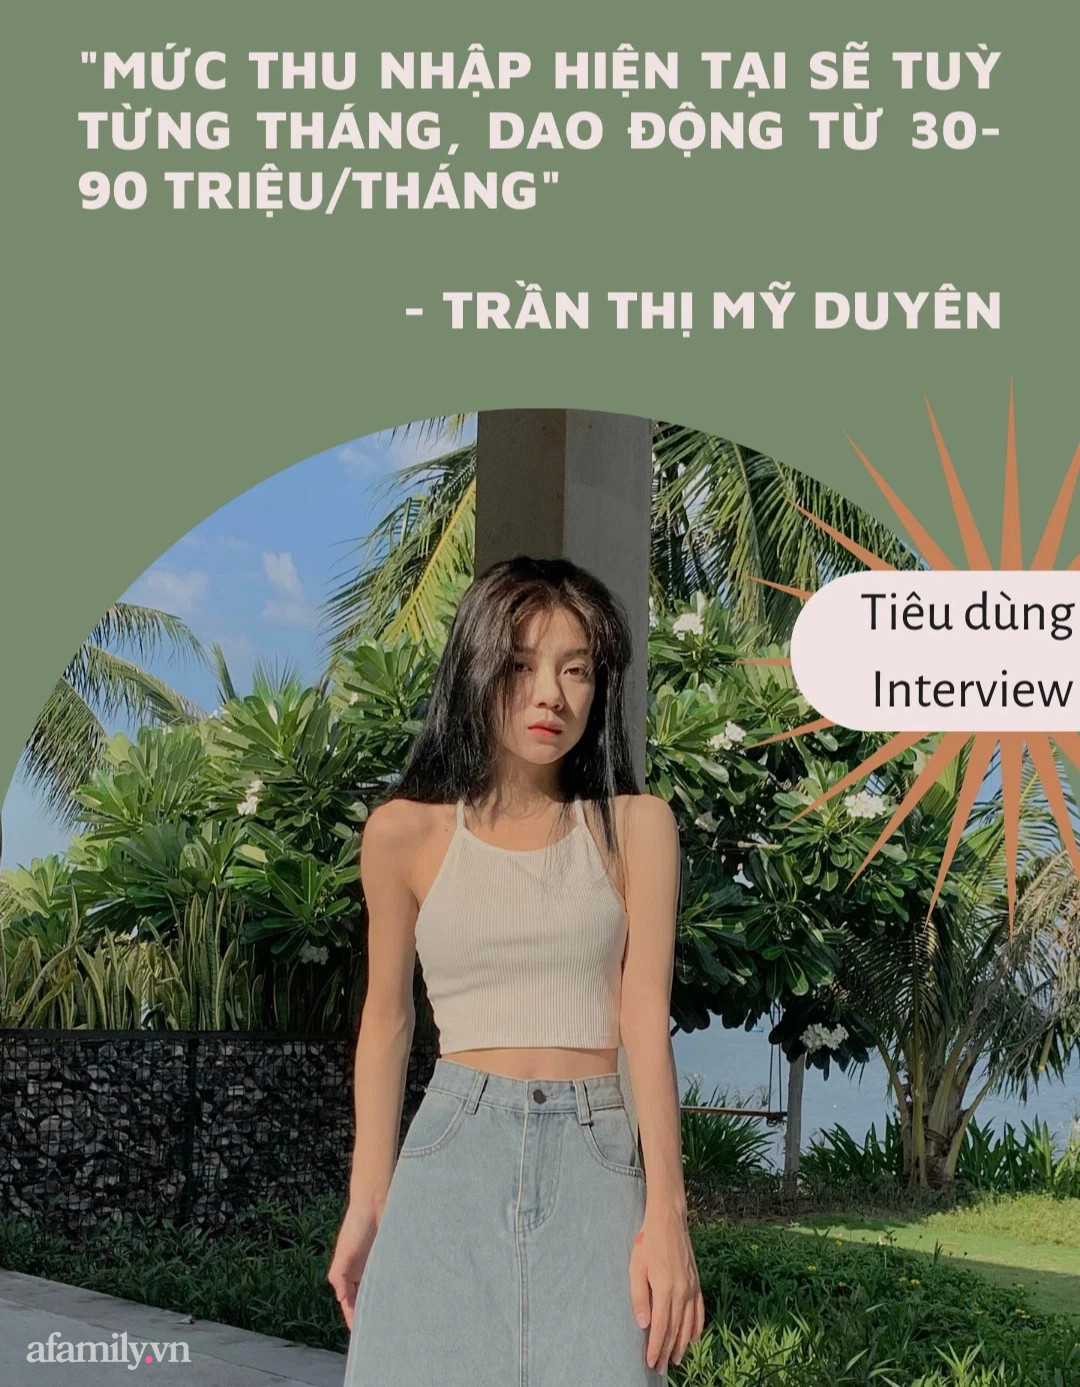 Cô gái 22 tuổi ở Nha Trang chia sẻ chuyện theo nghề livestream, thu nhập cao nhất tới gần 100 triệu/tháng - Ảnh 4.